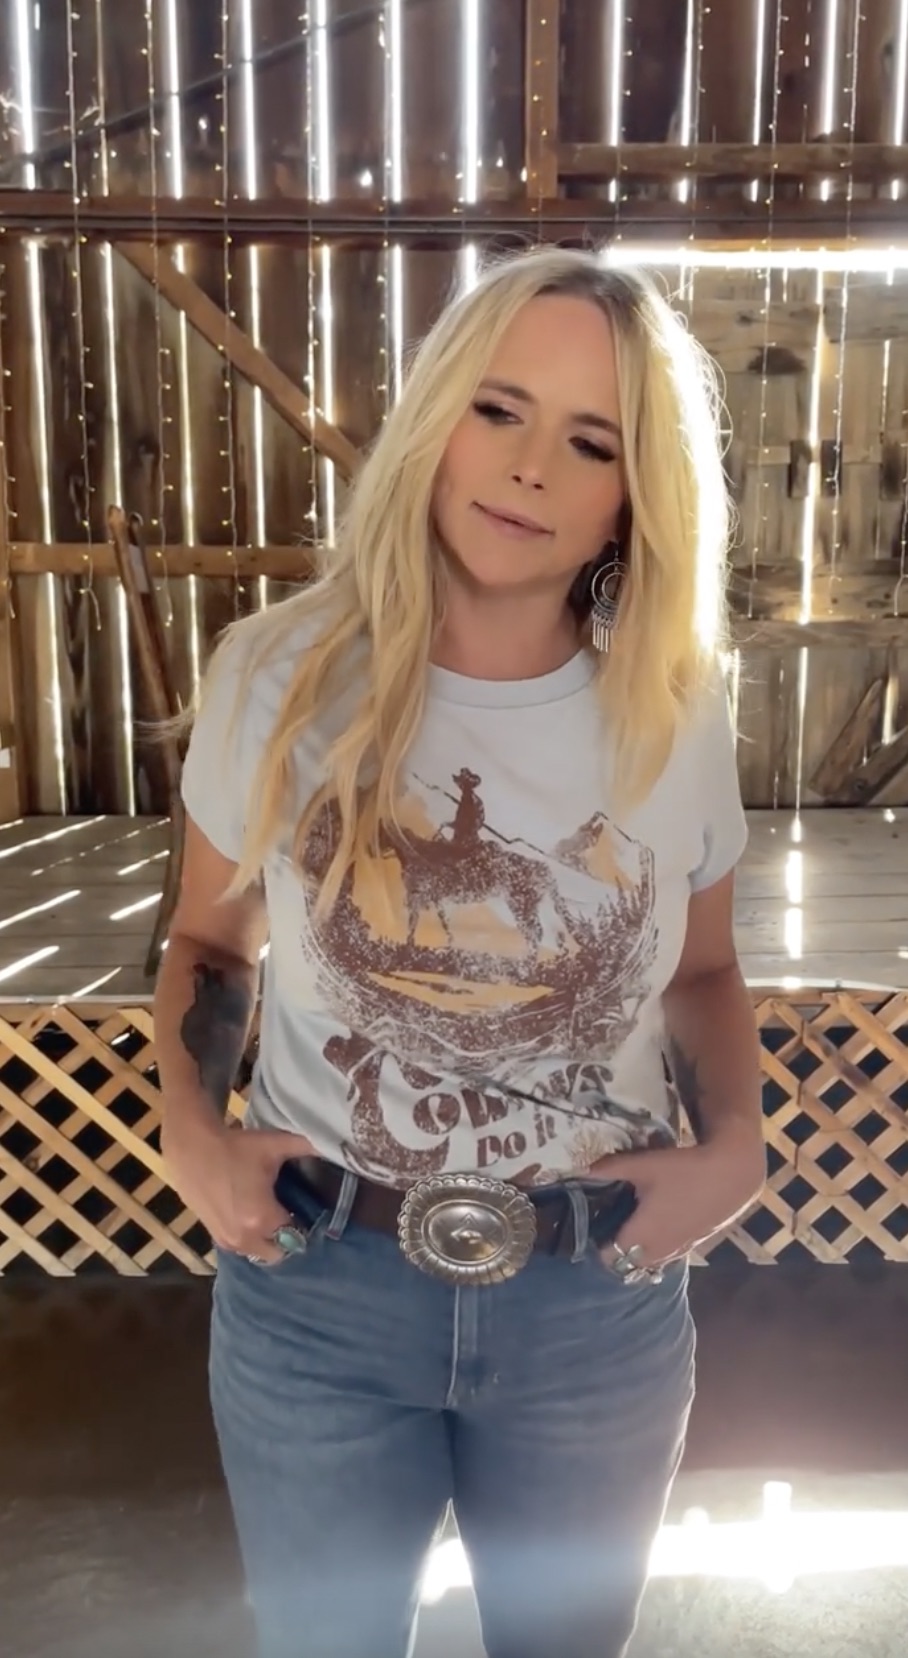 Miranda Lambert's T-shirt read 'Cowboys Do It Better'